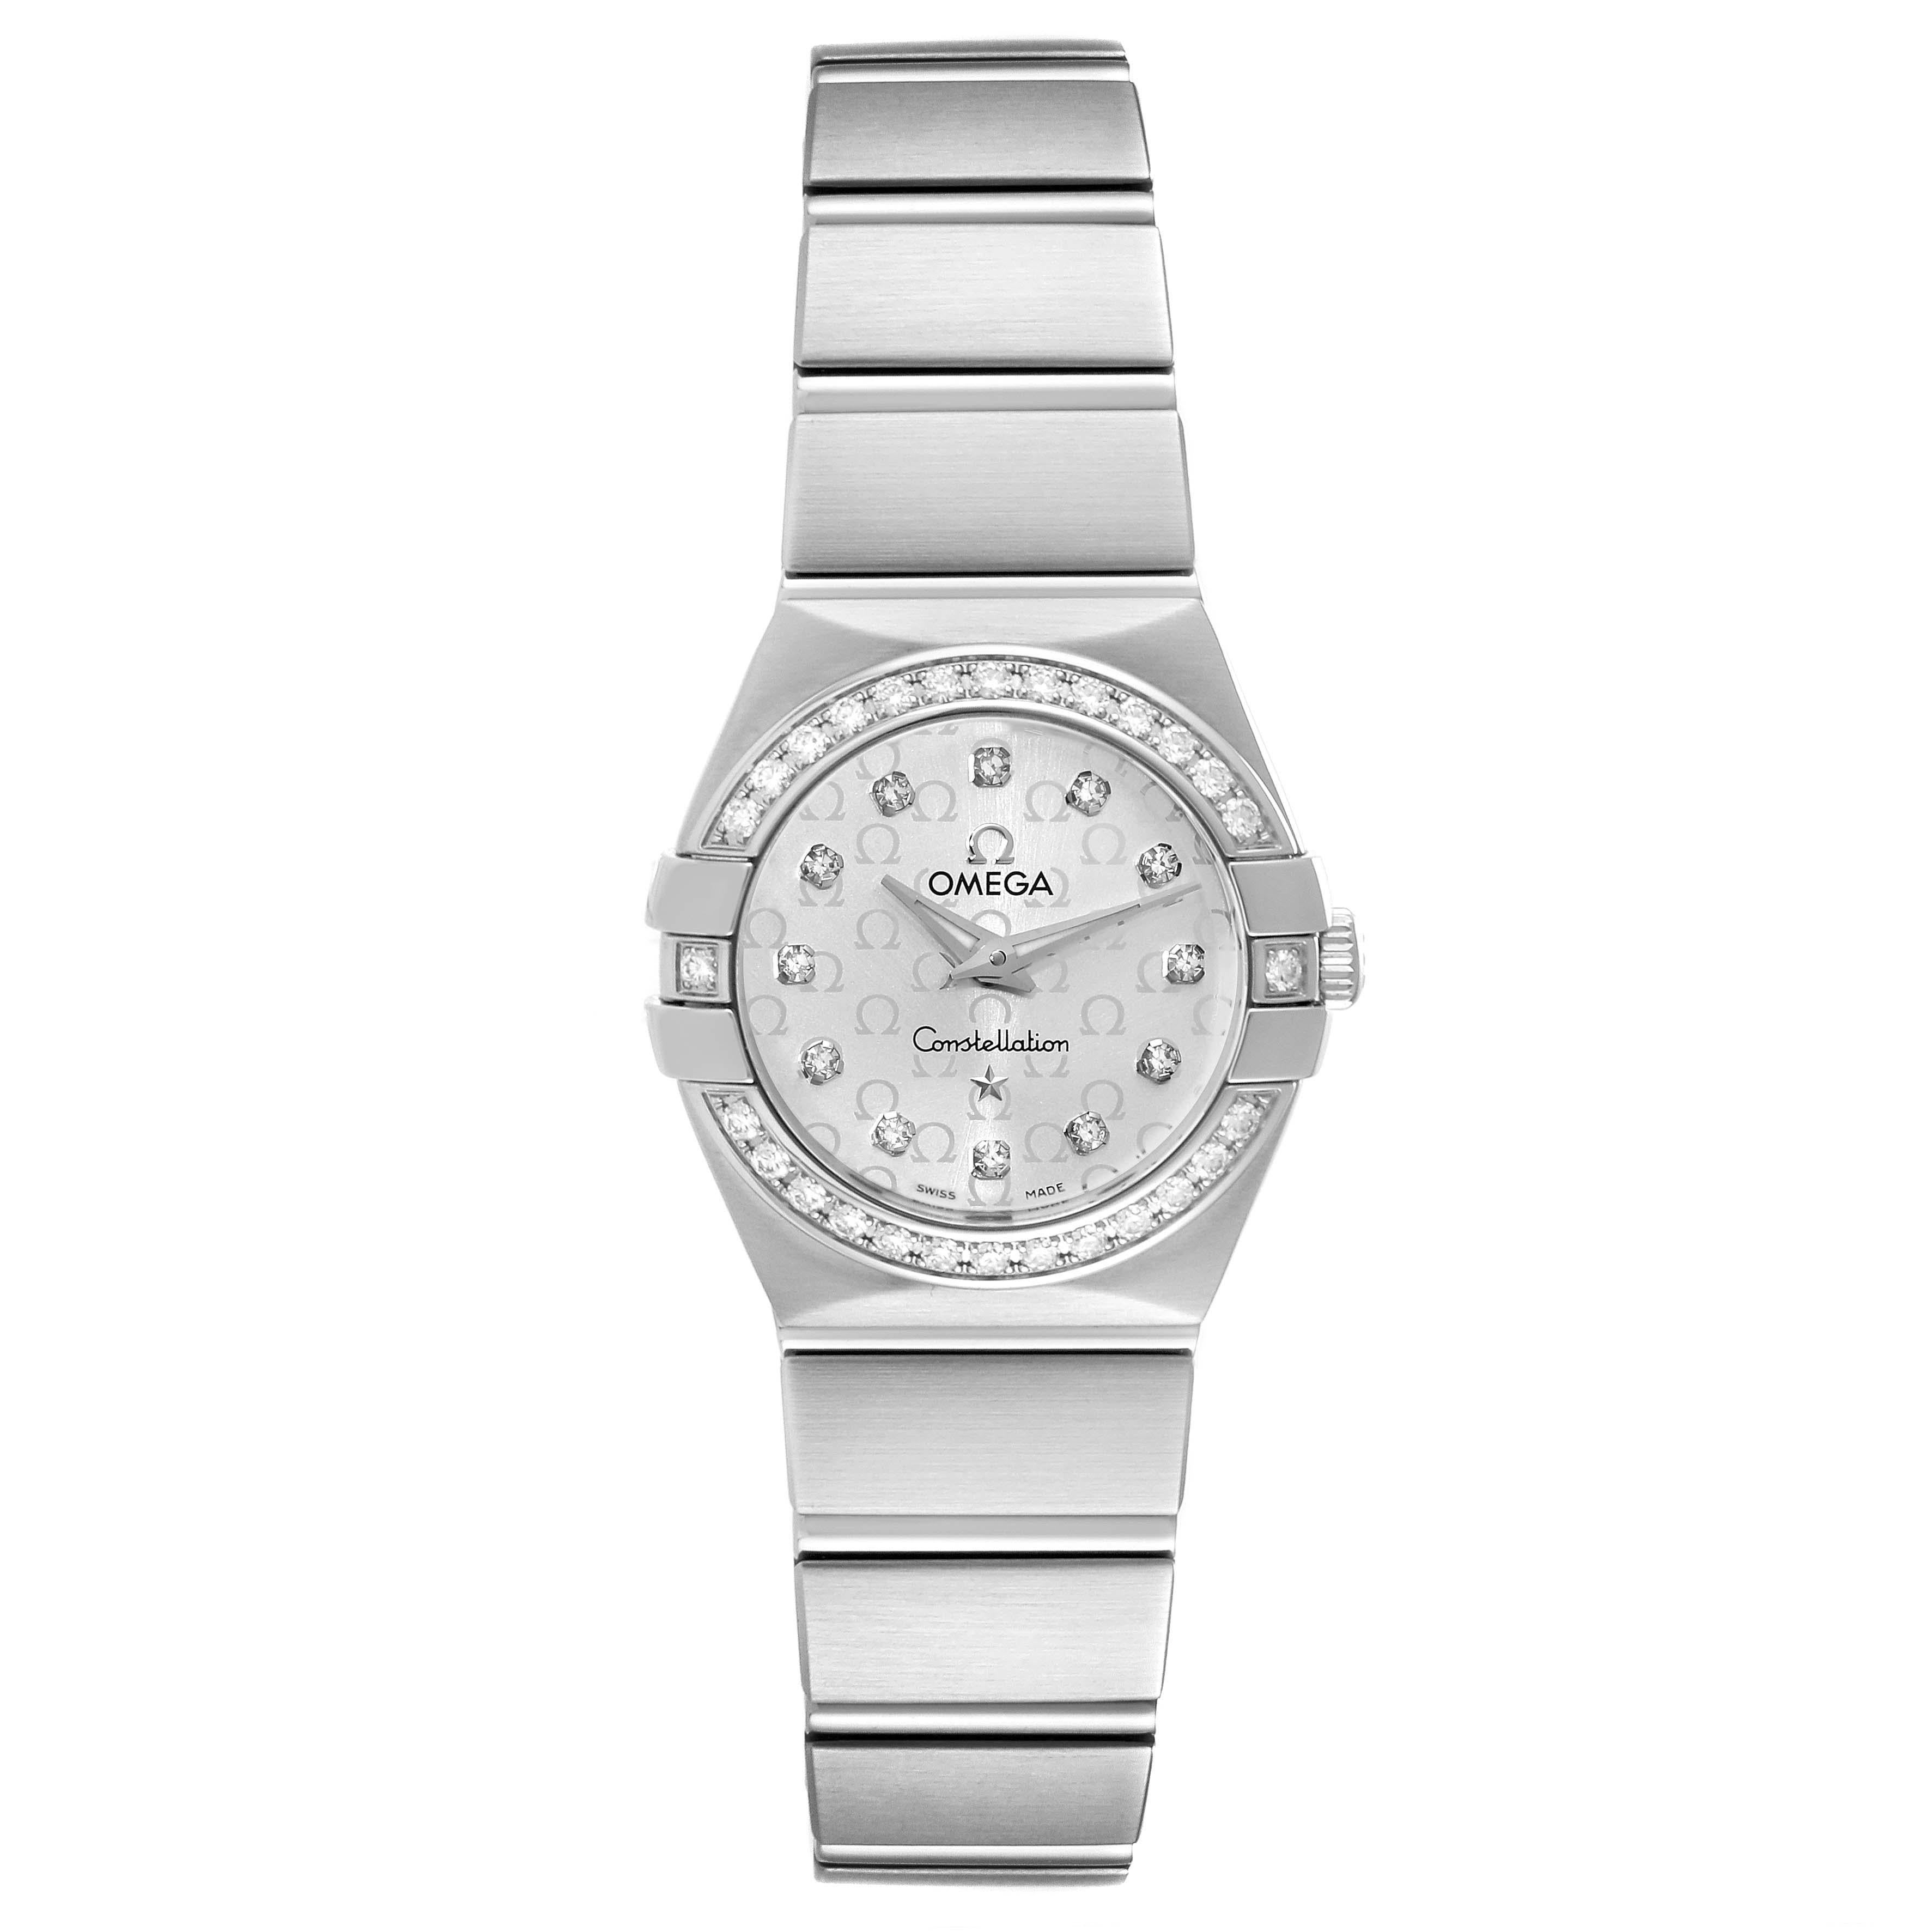 Omega Constellation Diamond Steel Ladies Watch 123.15.24.60.52.001 Box Card. Mouvement à quartz. Boîtier rond en acier inoxydable brossé de 24 mm de diamètre. Lunette en acier inoxydable avec diamants d'origine Omega. Verre saphir résistant aux